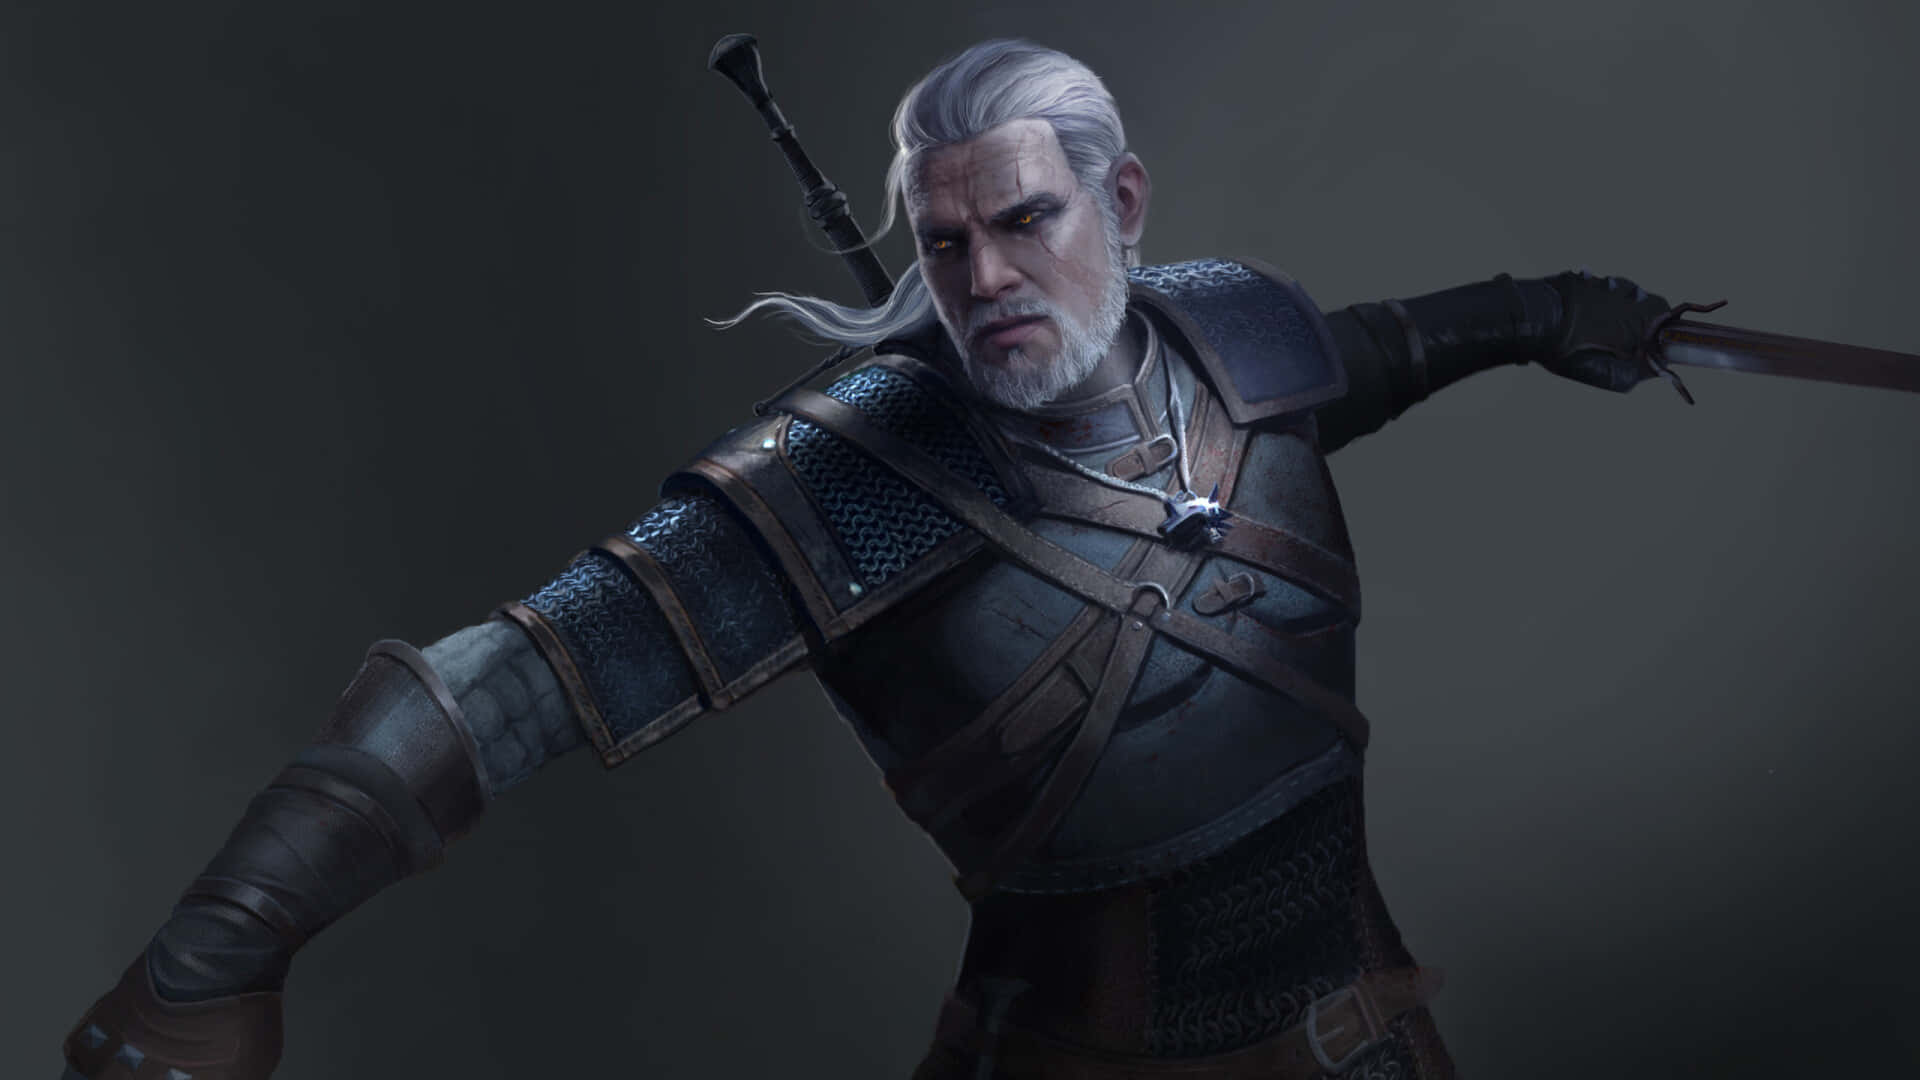 Geraltdi Rivia In Azione